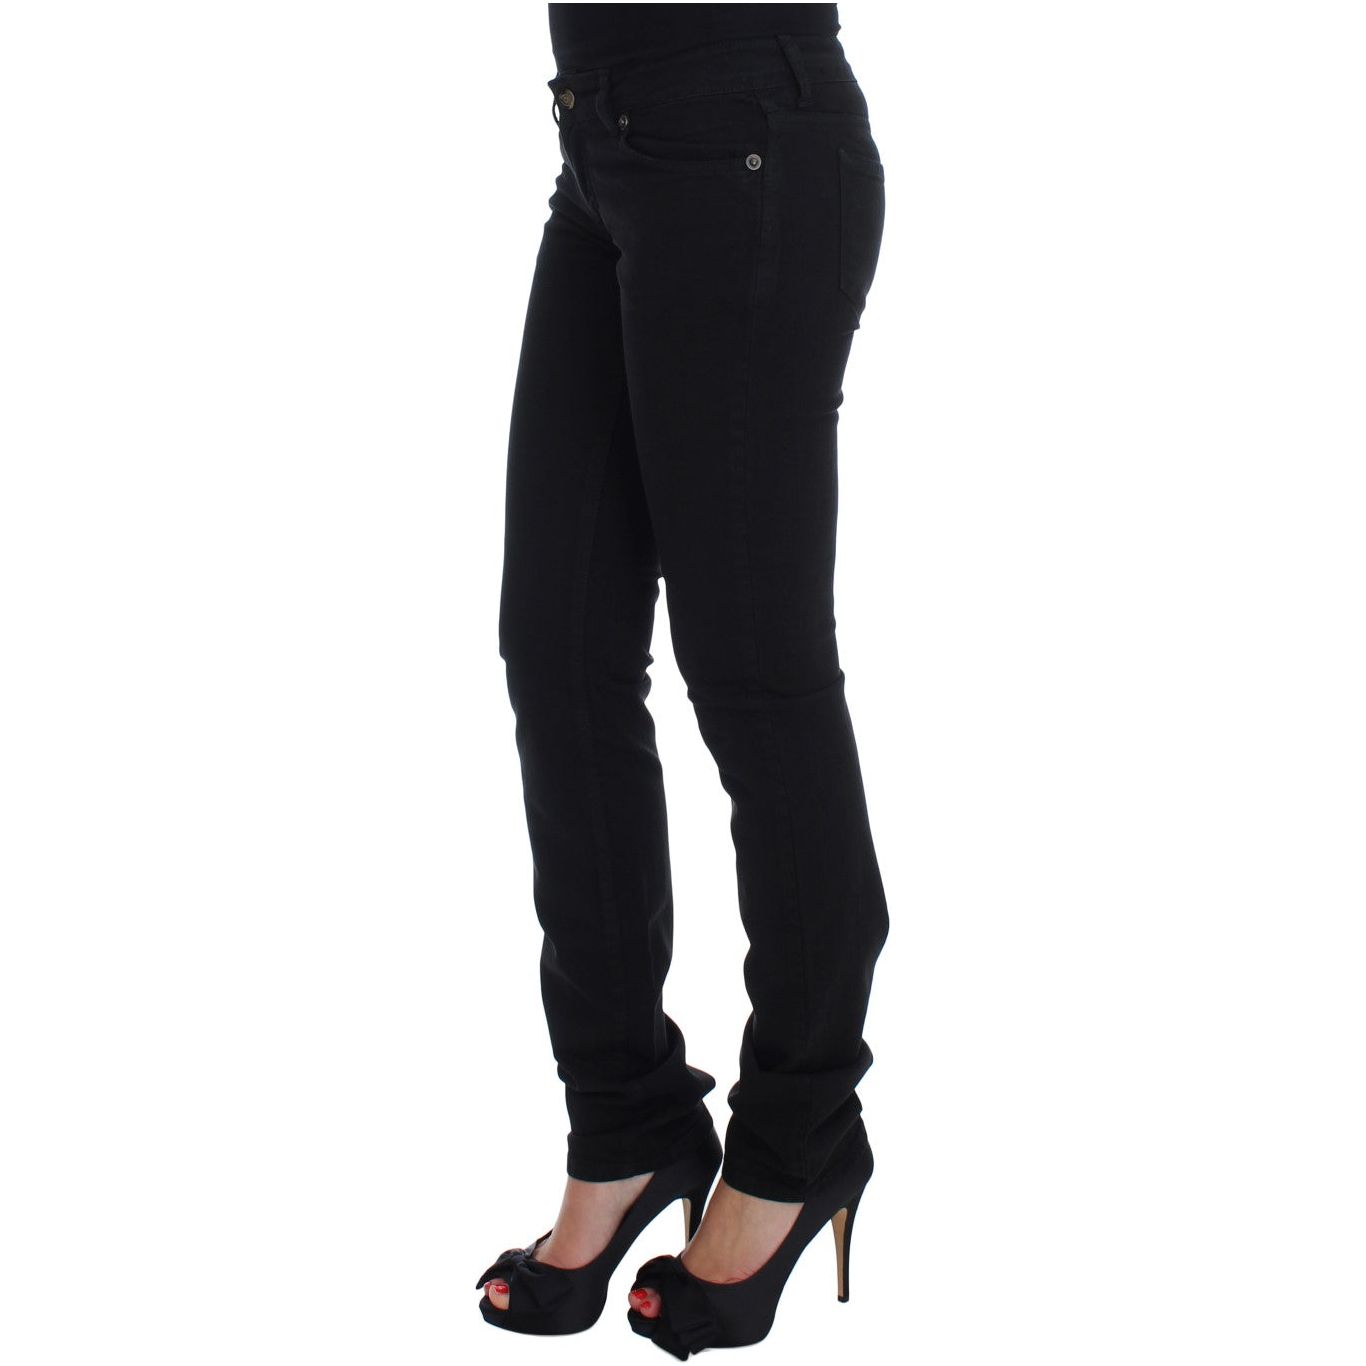 Cavalli Chic Slim Skinny Black Jeans black-cotton-stretch-slim-skinny-fit-jeans Jeans & Pants 60937-black-cotton-stretch-slim-skinny-fit-jeans-1.jpg